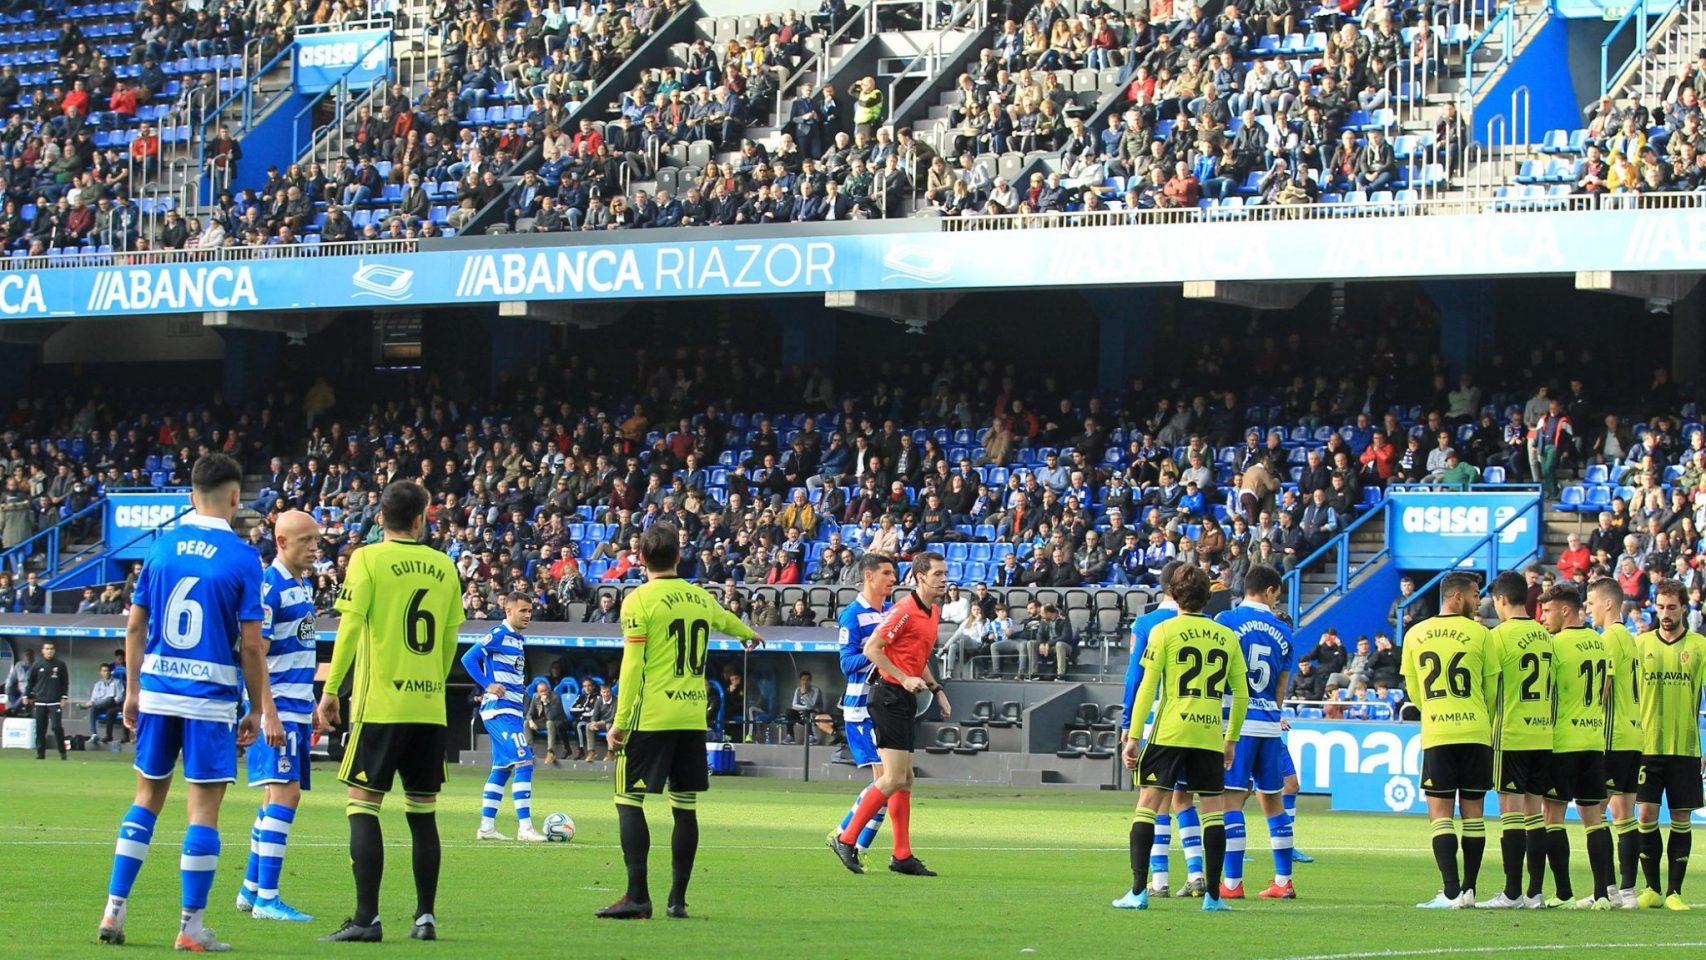 El estadio de Riazor, durante el partido contra el Real Zaragoza.